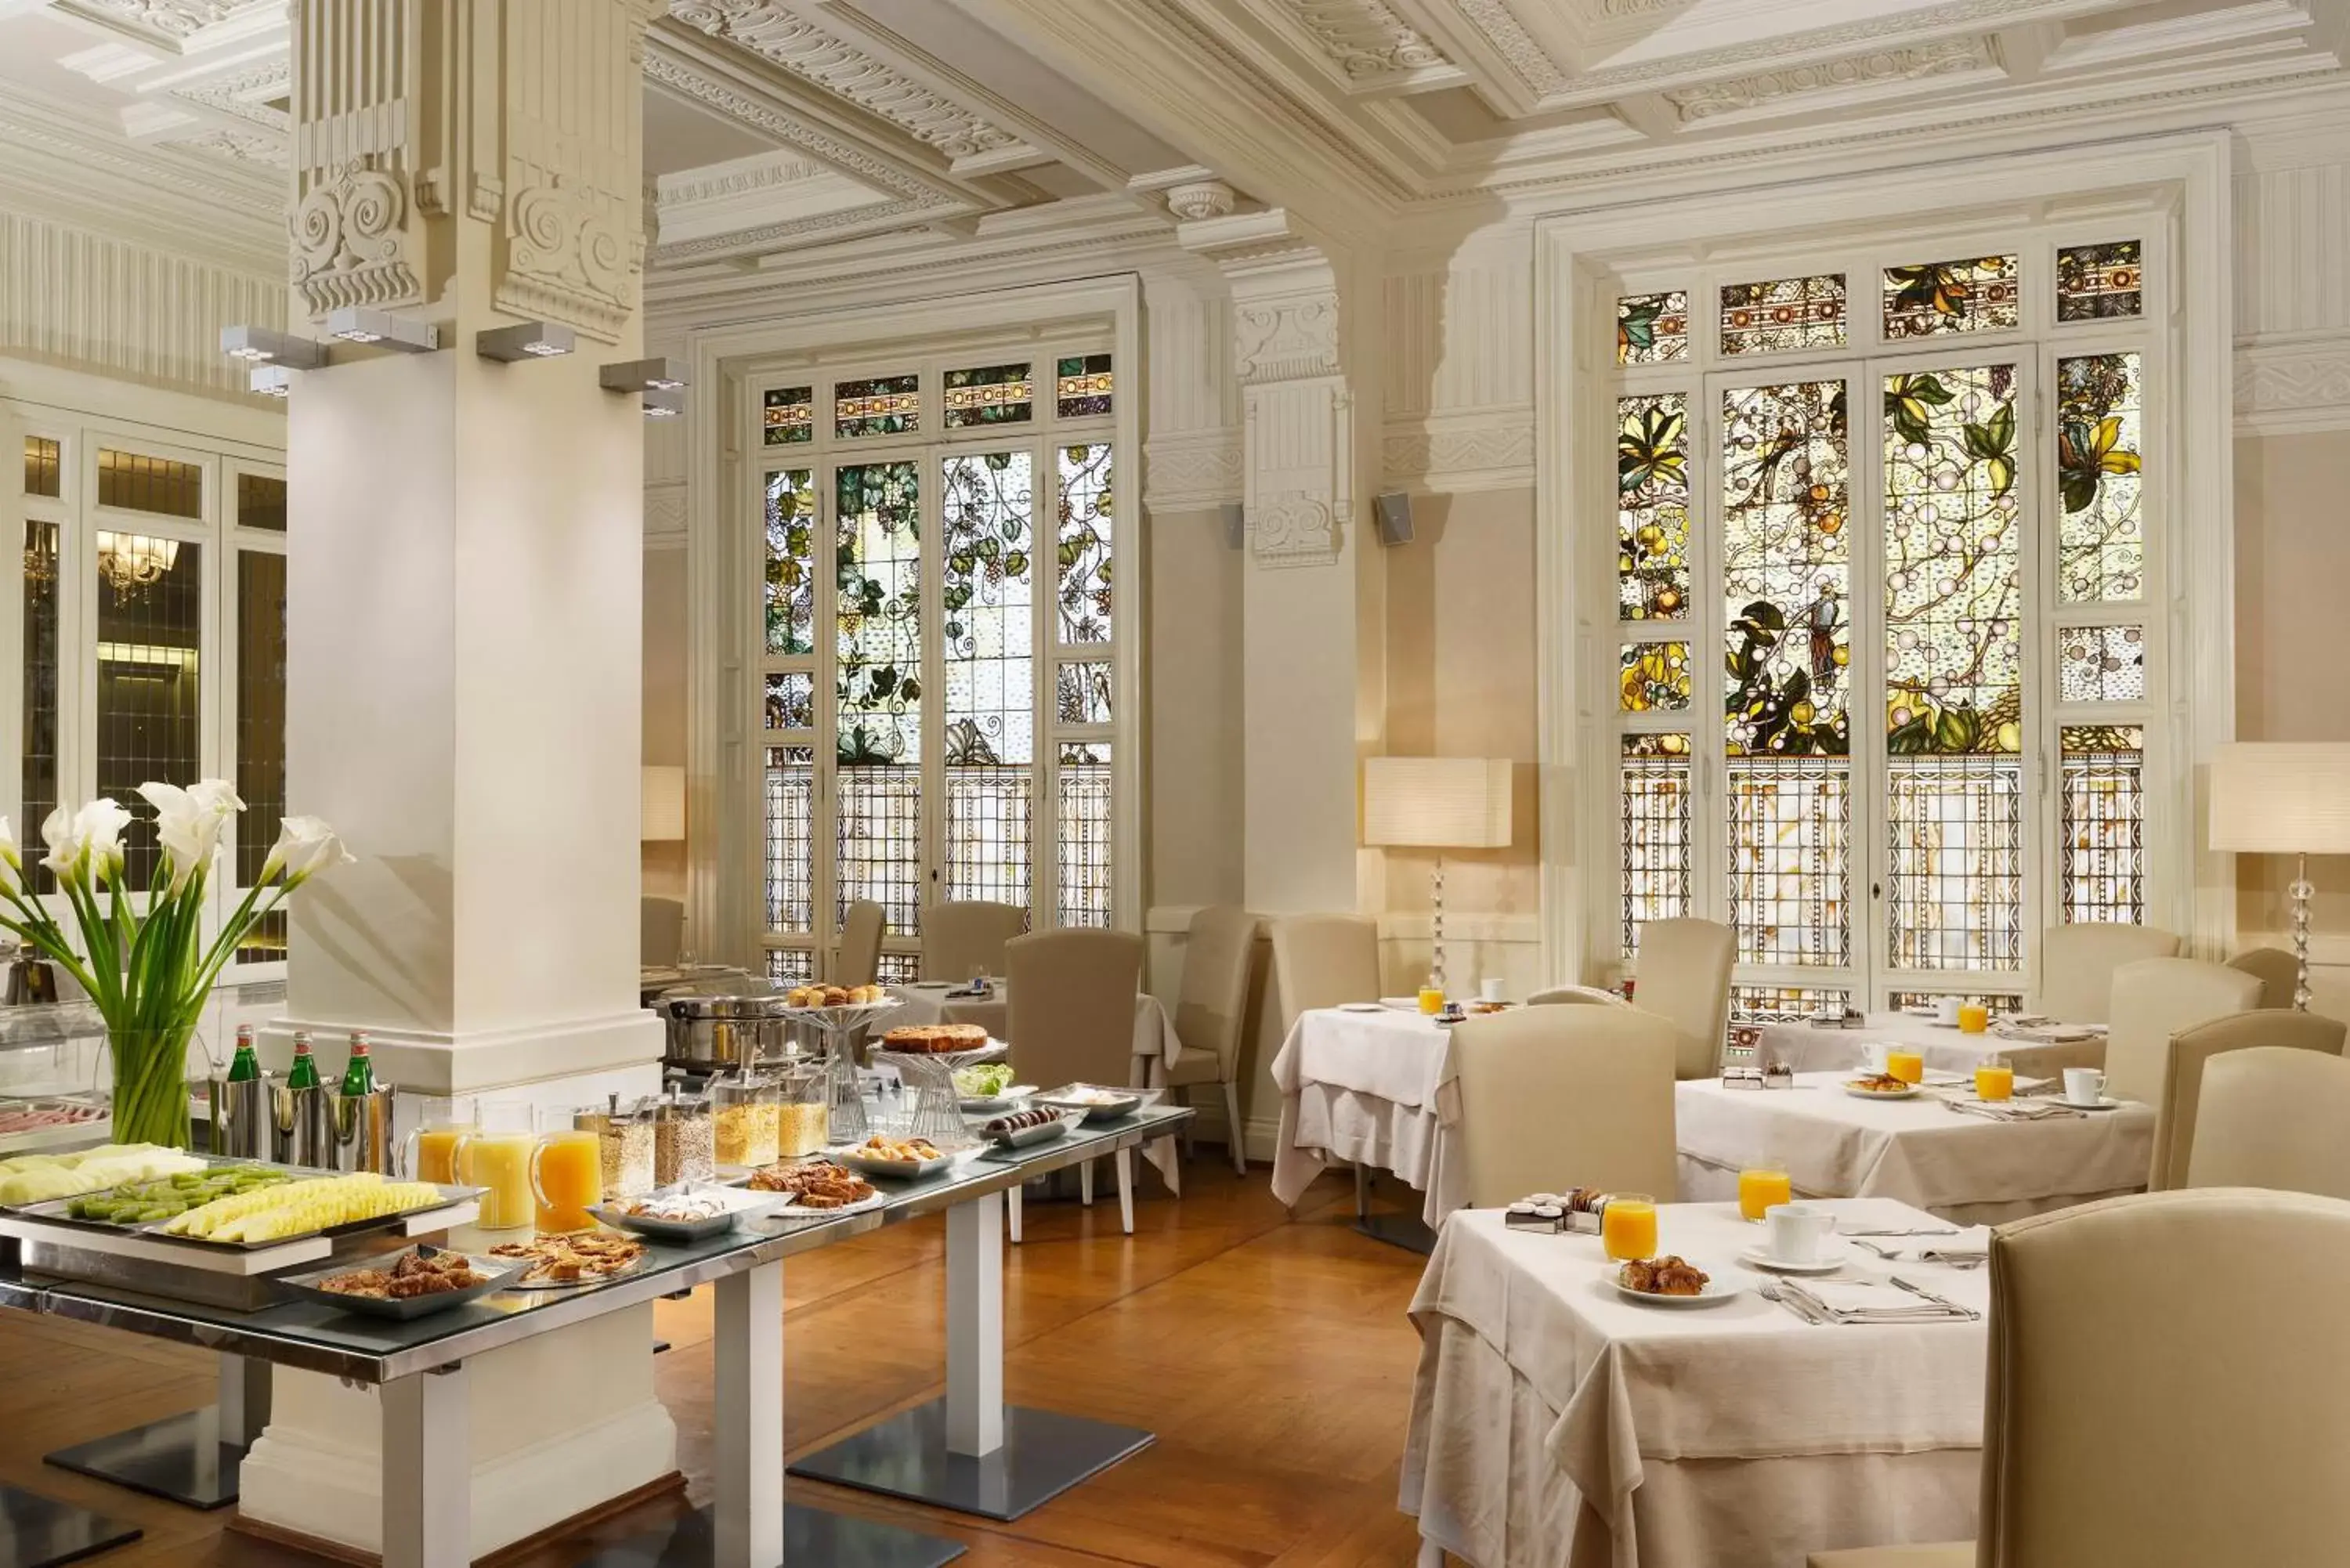 Buffet breakfast in Brunelleschi Hotel